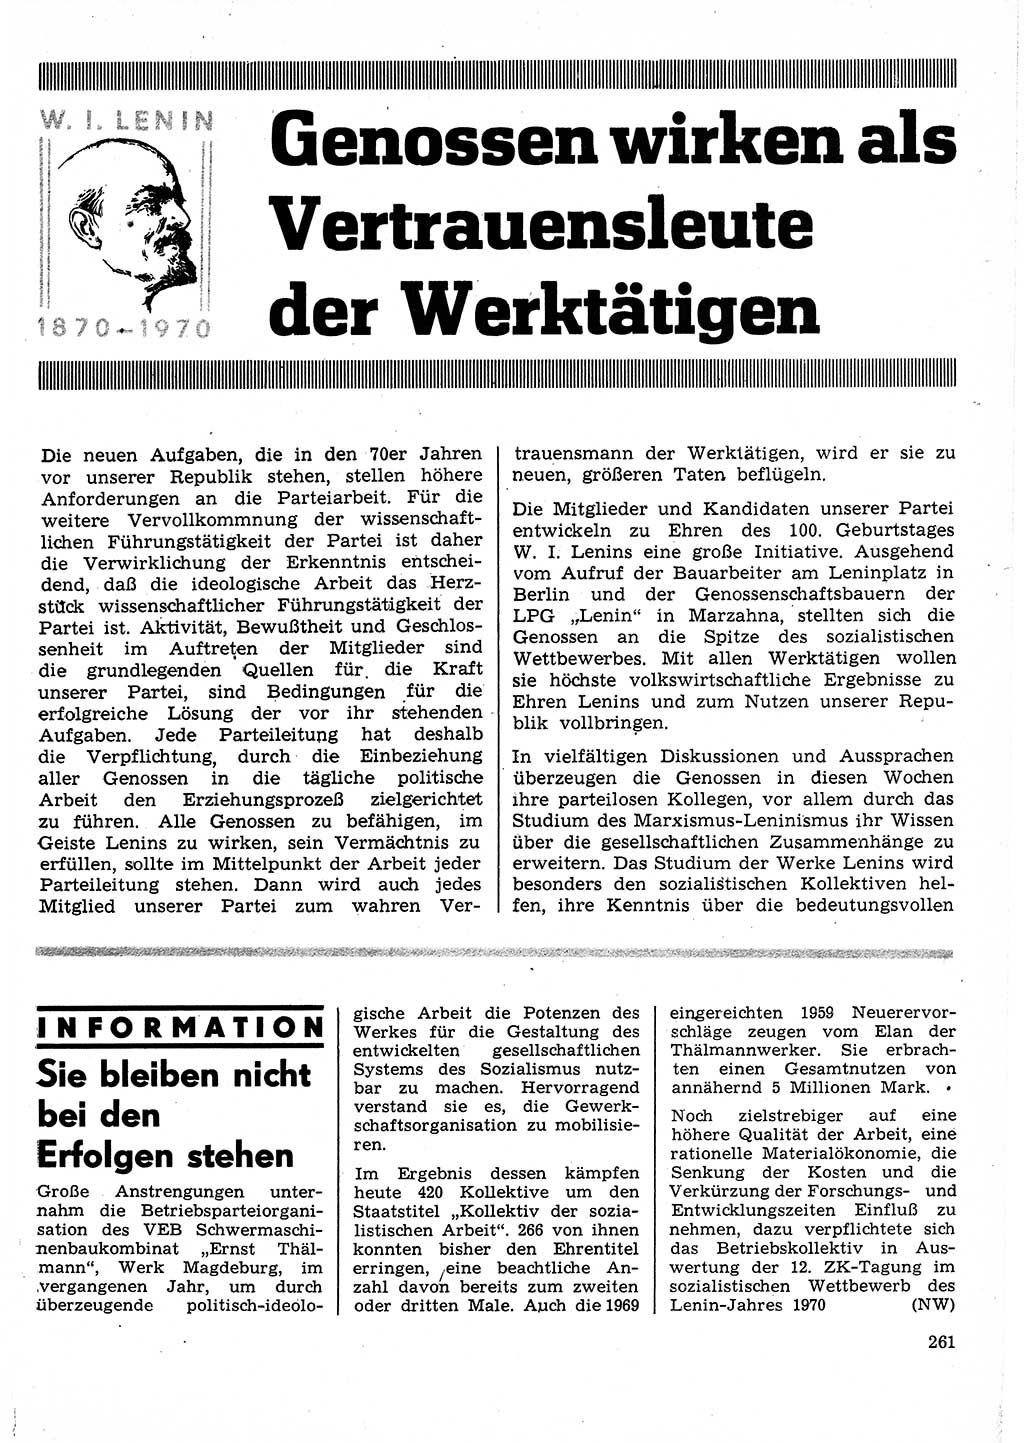 Neuer Weg (NW), Organ des Zentralkomitees (ZK) der SED (Sozialistische Einheitspartei Deutschlands) für Fragen des Parteilebens, 25. Jahrgang [Deutsche Demokratische Republik (DDR)] 1970, Seite 261 (NW ZK SED DDR 1970, S. 261)